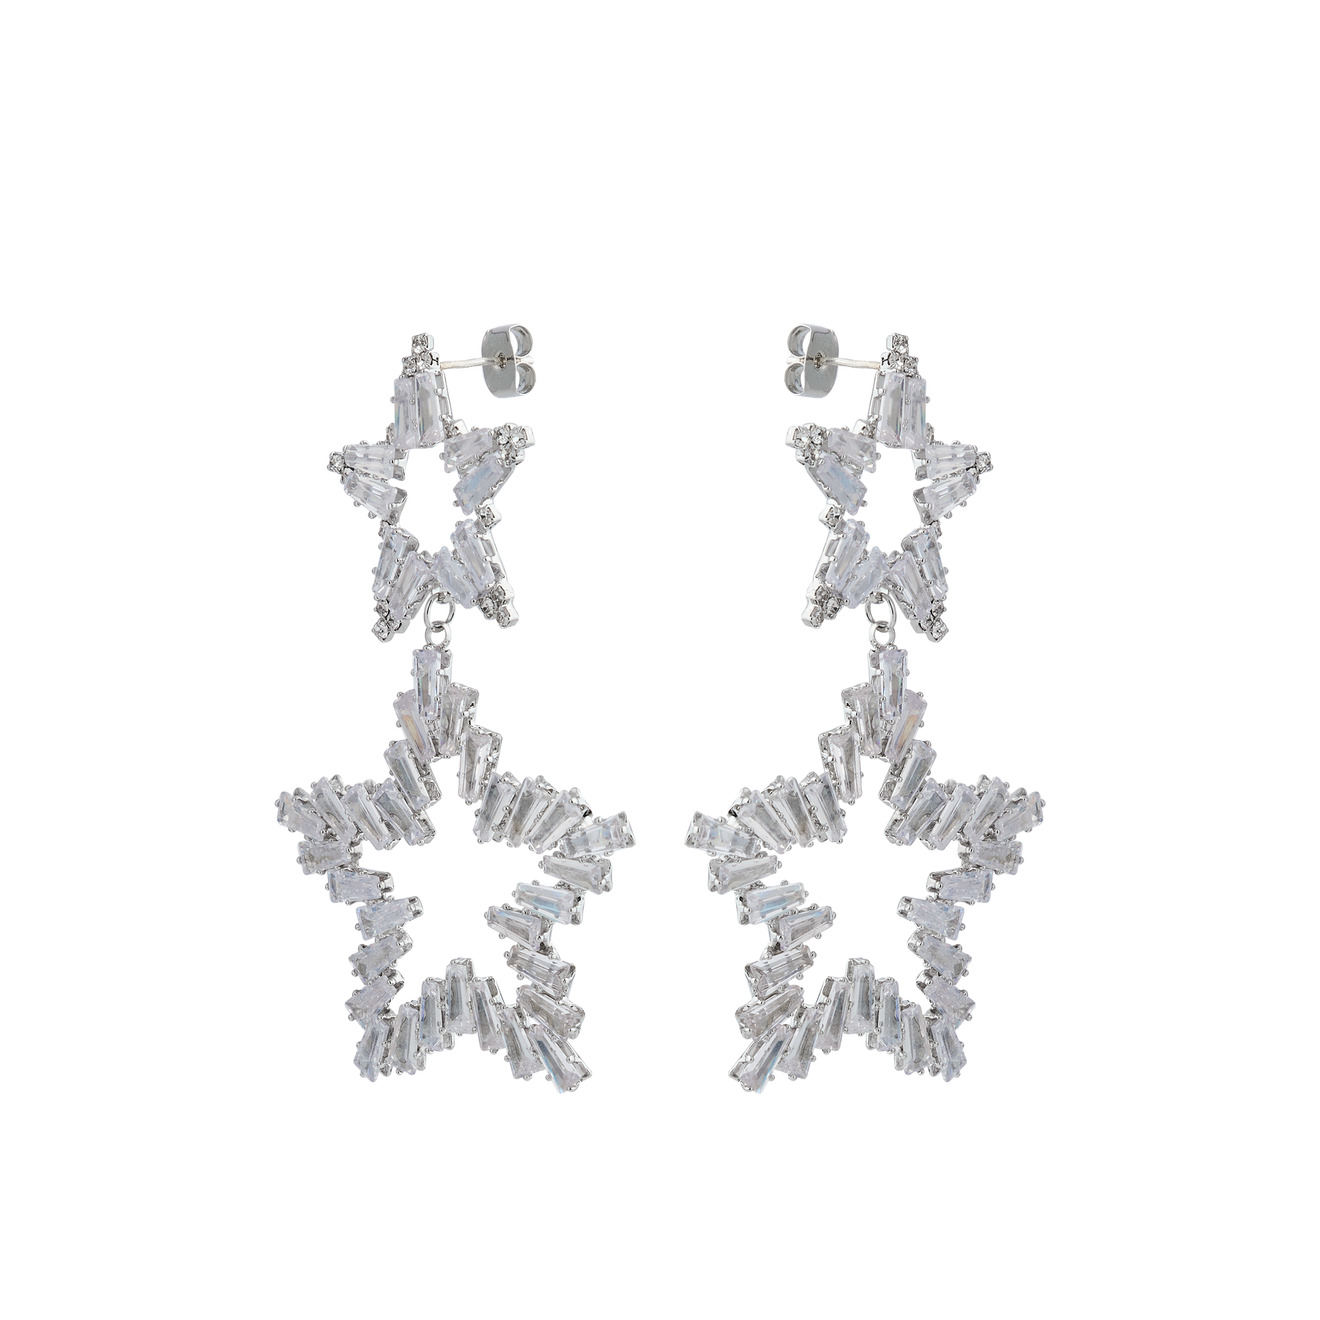 Herald Percy Серебристые серьги из двух звезд с кристаллами herald percy серебристые серьги хупы с дорожкой из белых кристаллов